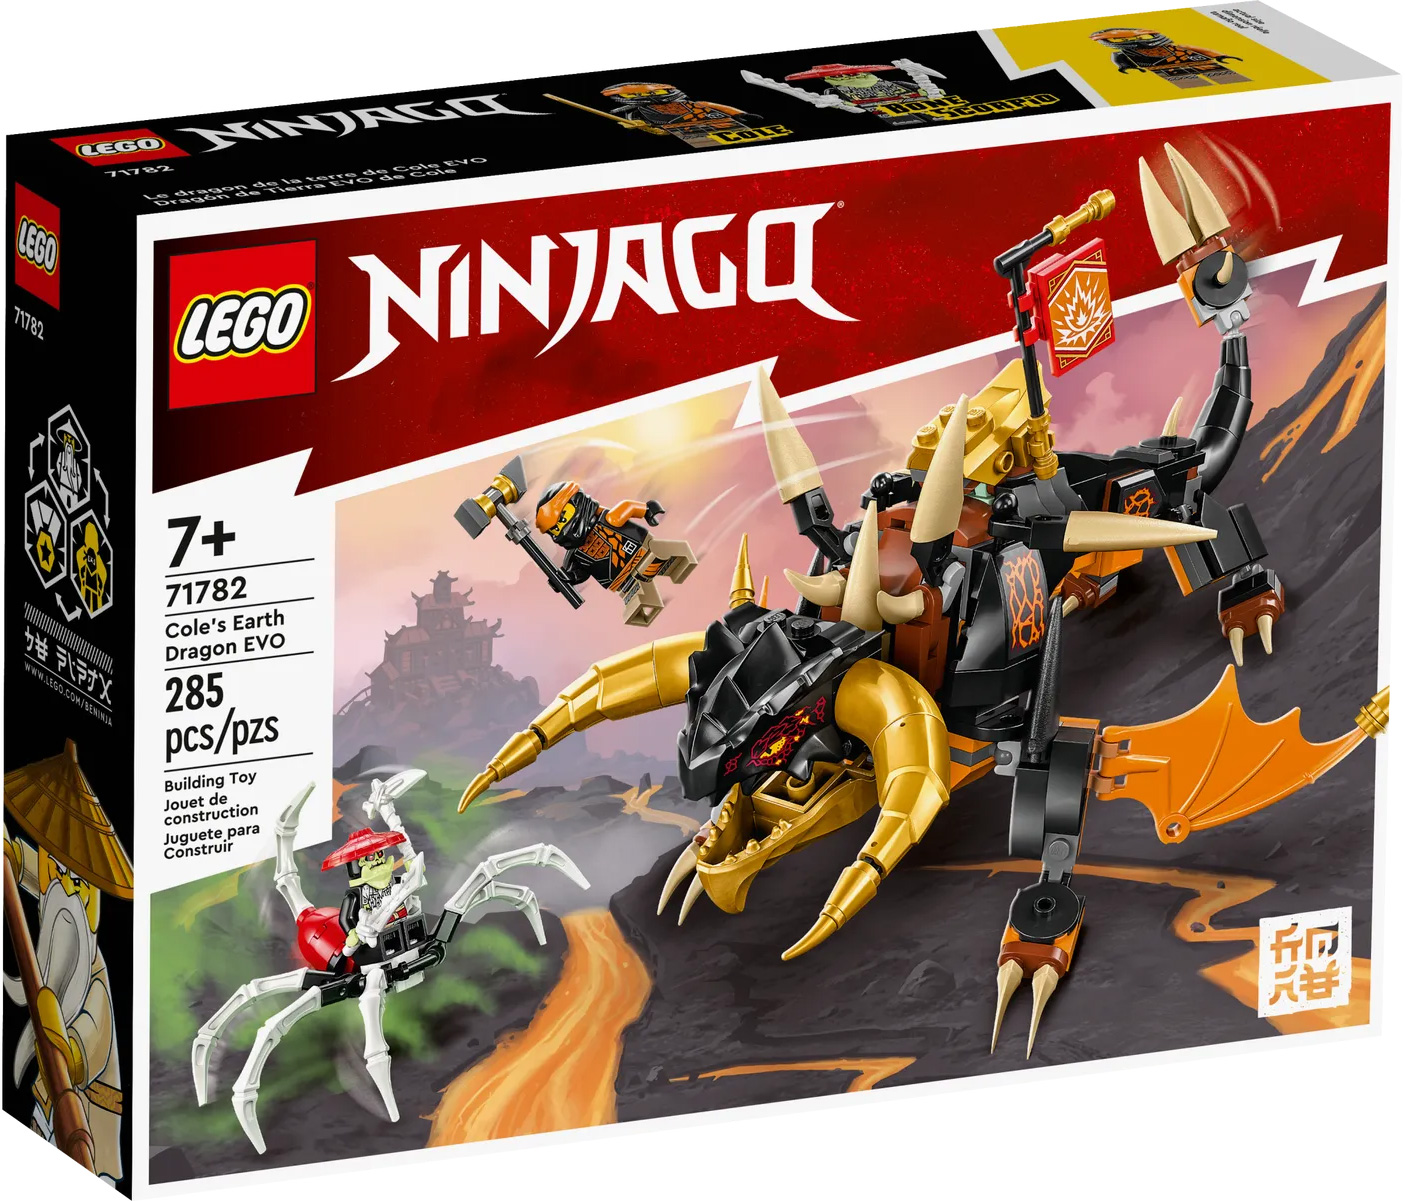 Jouet - LEGO - Ninjago Le salto Spinjitzu : le pouvoir du dragon de Kai -  72 pièces - A partir de 12 ans rouge - Lego